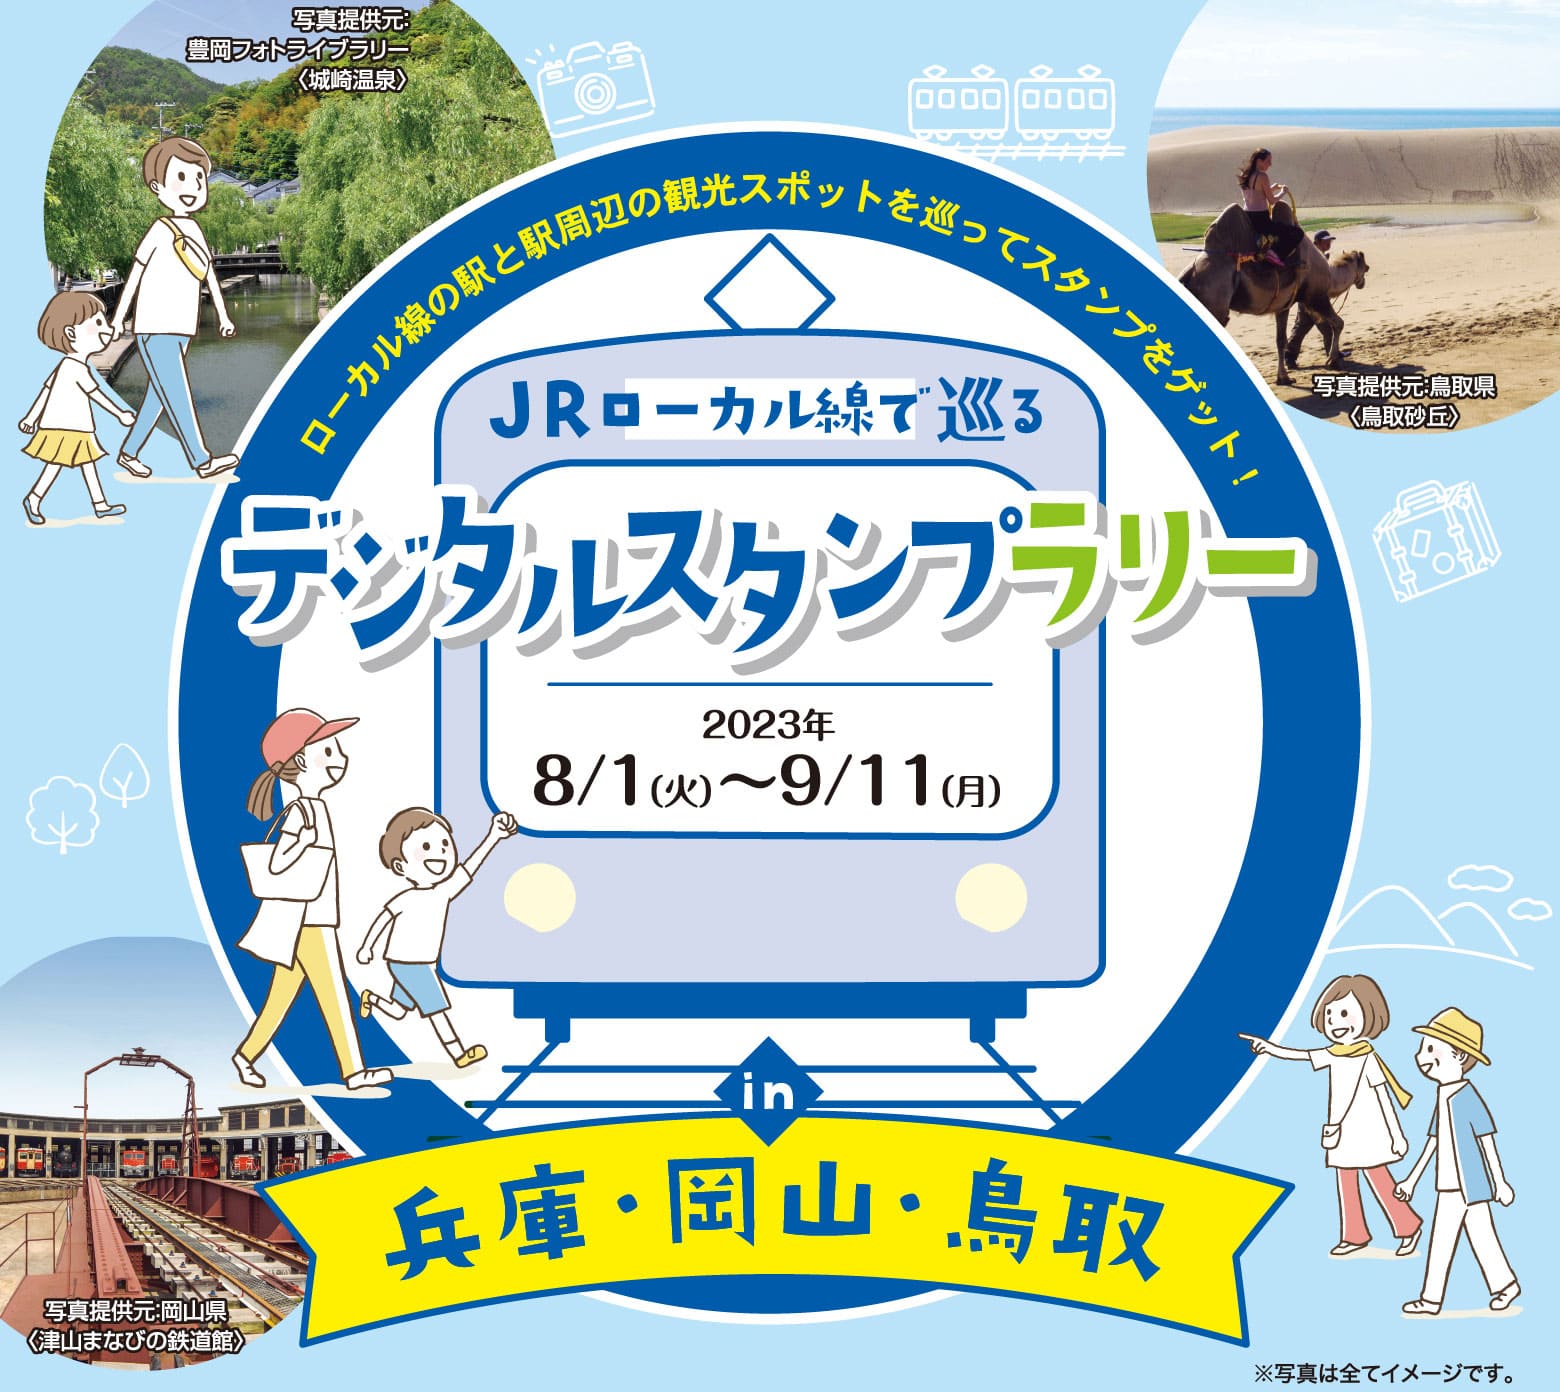 JRローカル線で巡るデジタルスタンプラリー in 兵庫・岡山・鳥取